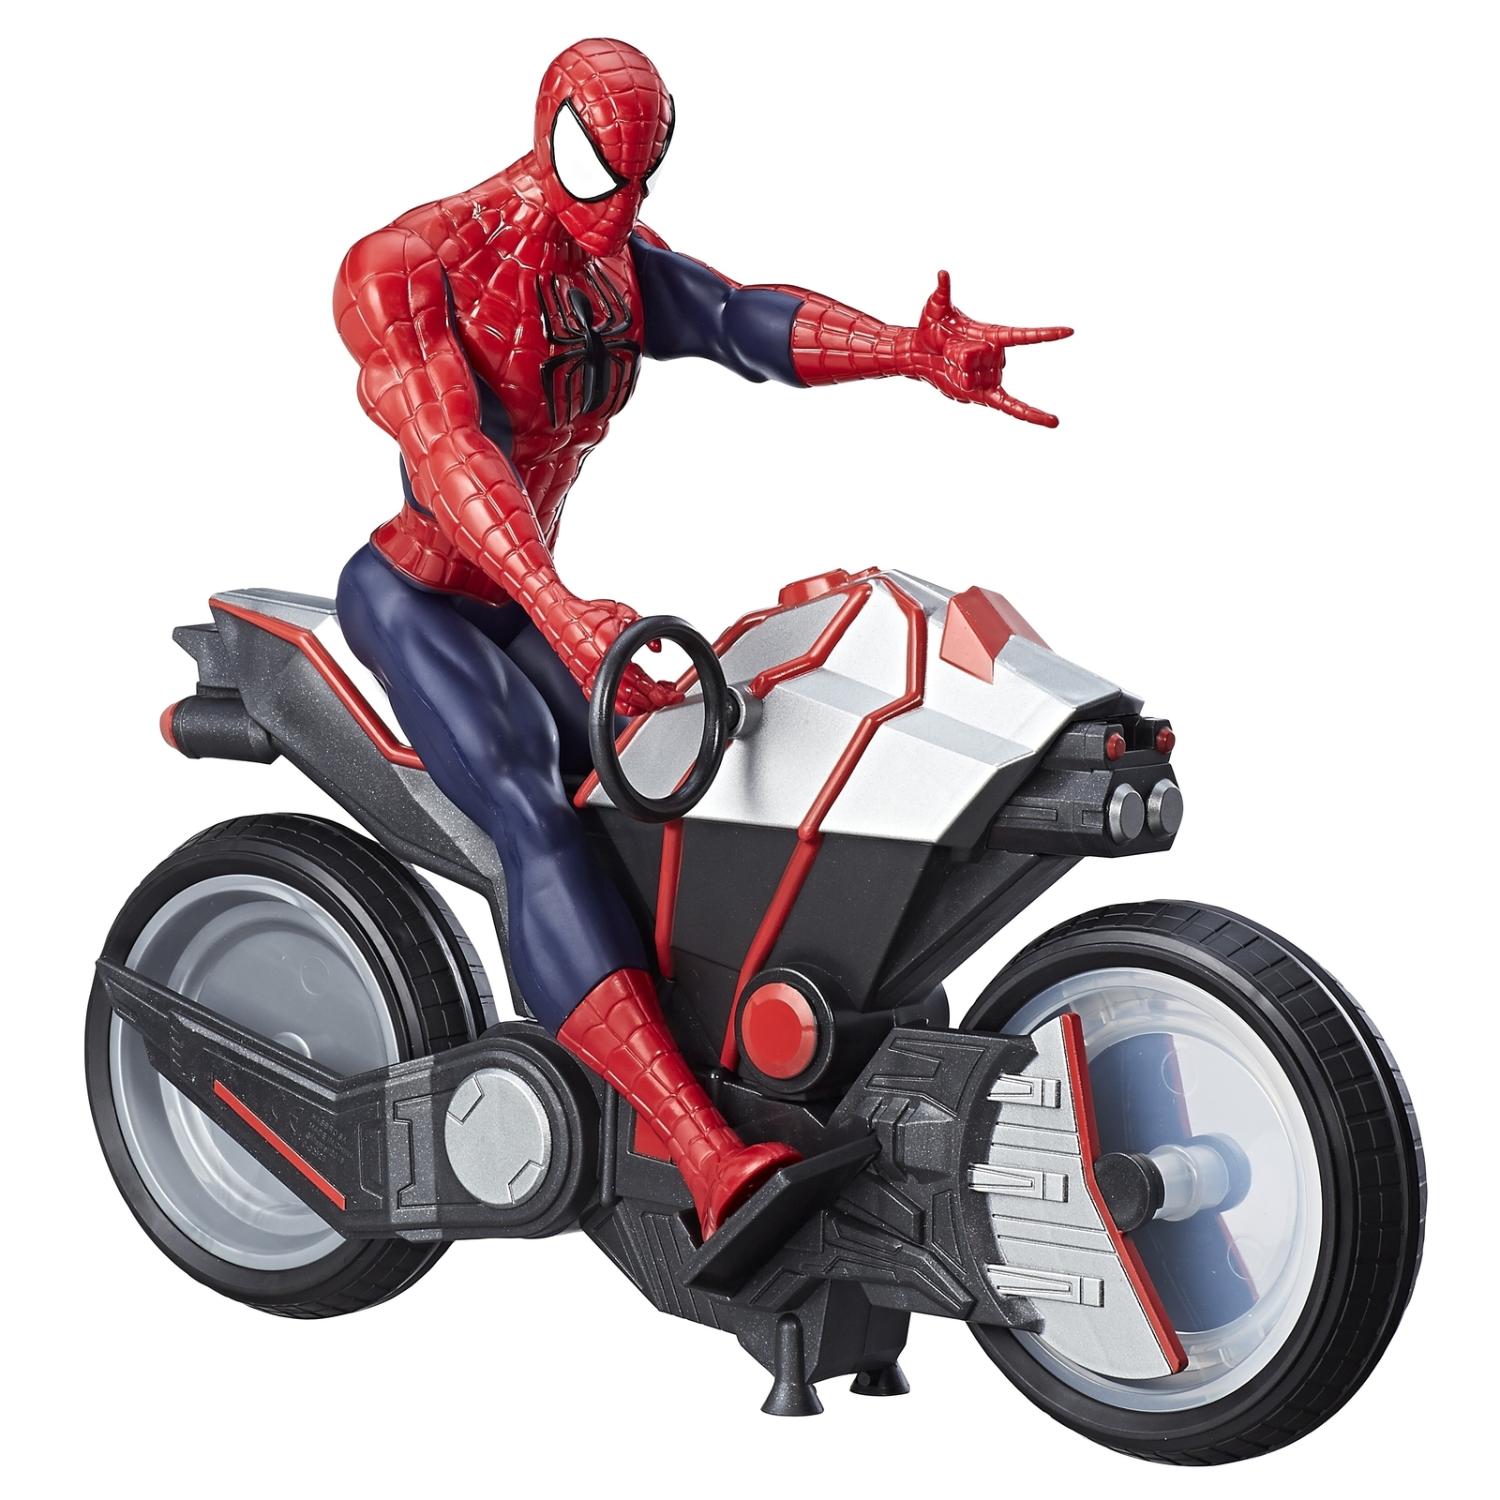 Фигурка Spider-man. Титаны - Человек-Паук и мотоцикл  